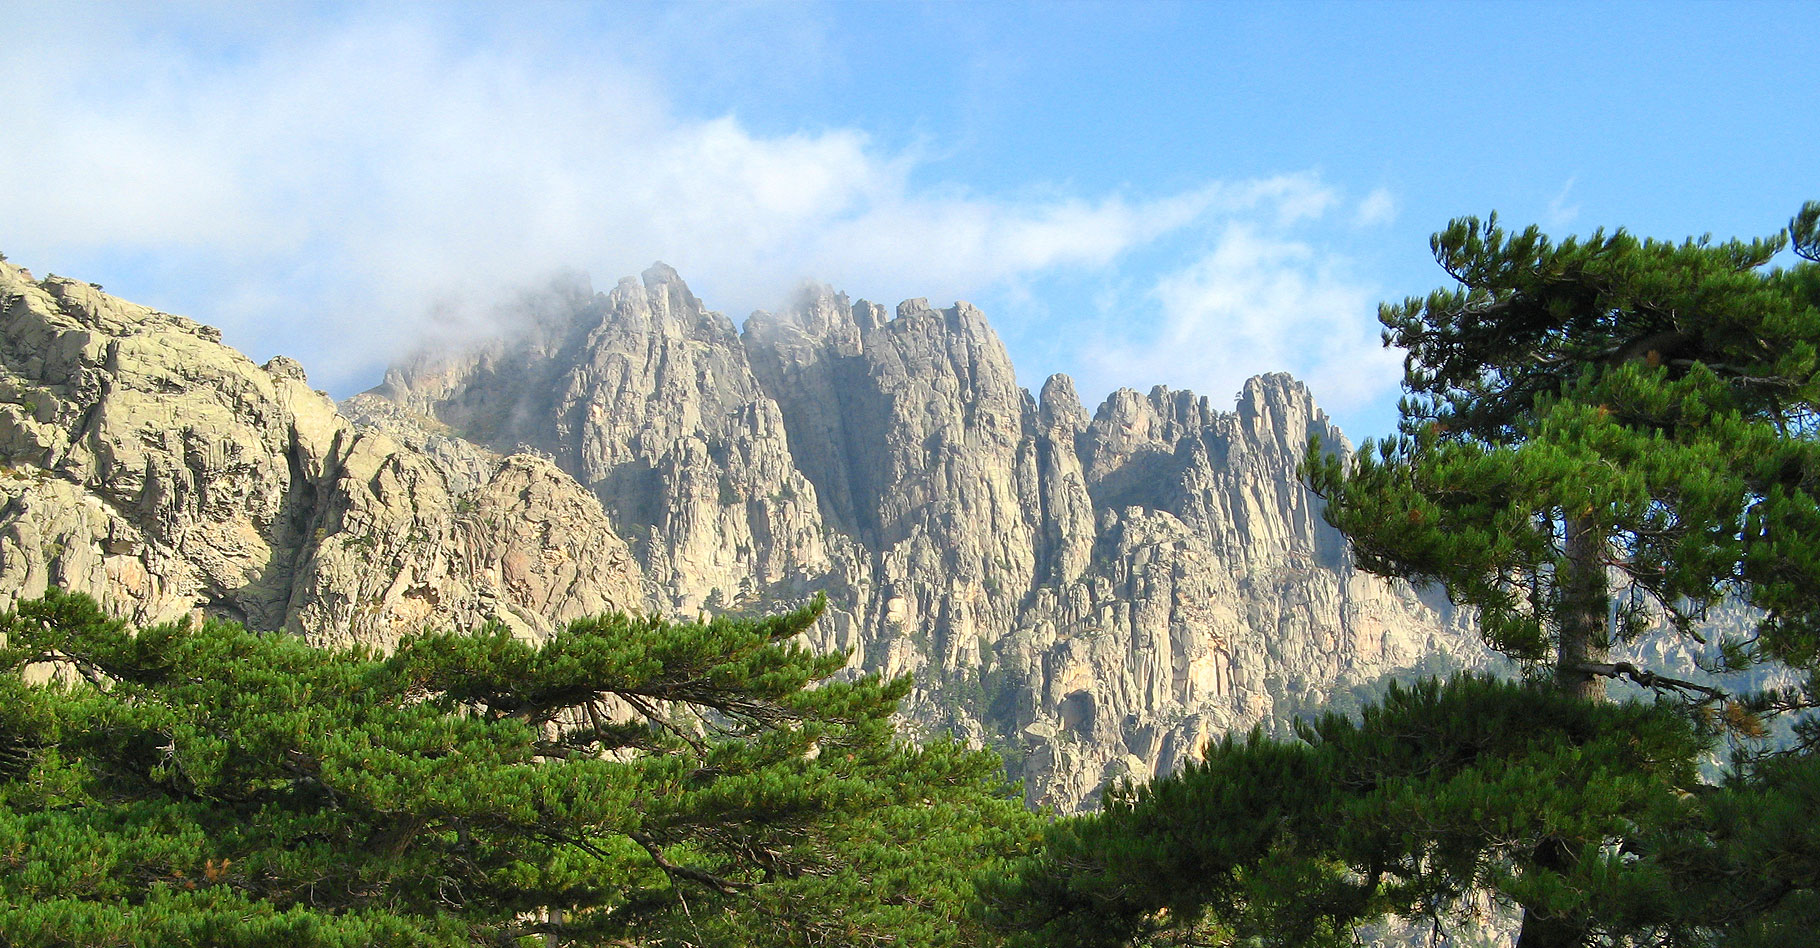 La montagne de granite et de schiste